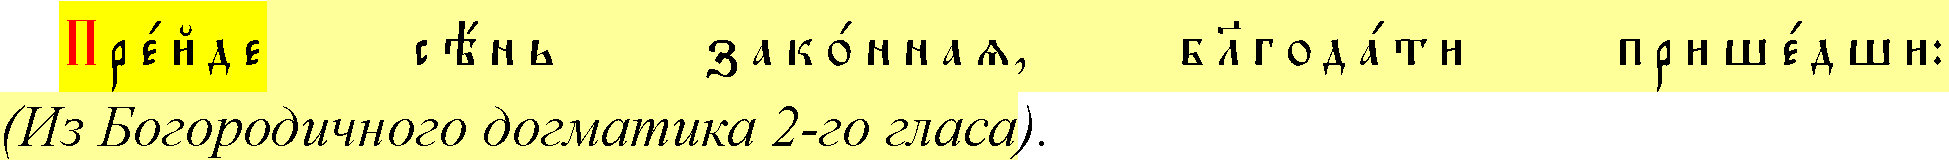 Спряжение глаголов в старославянском языке